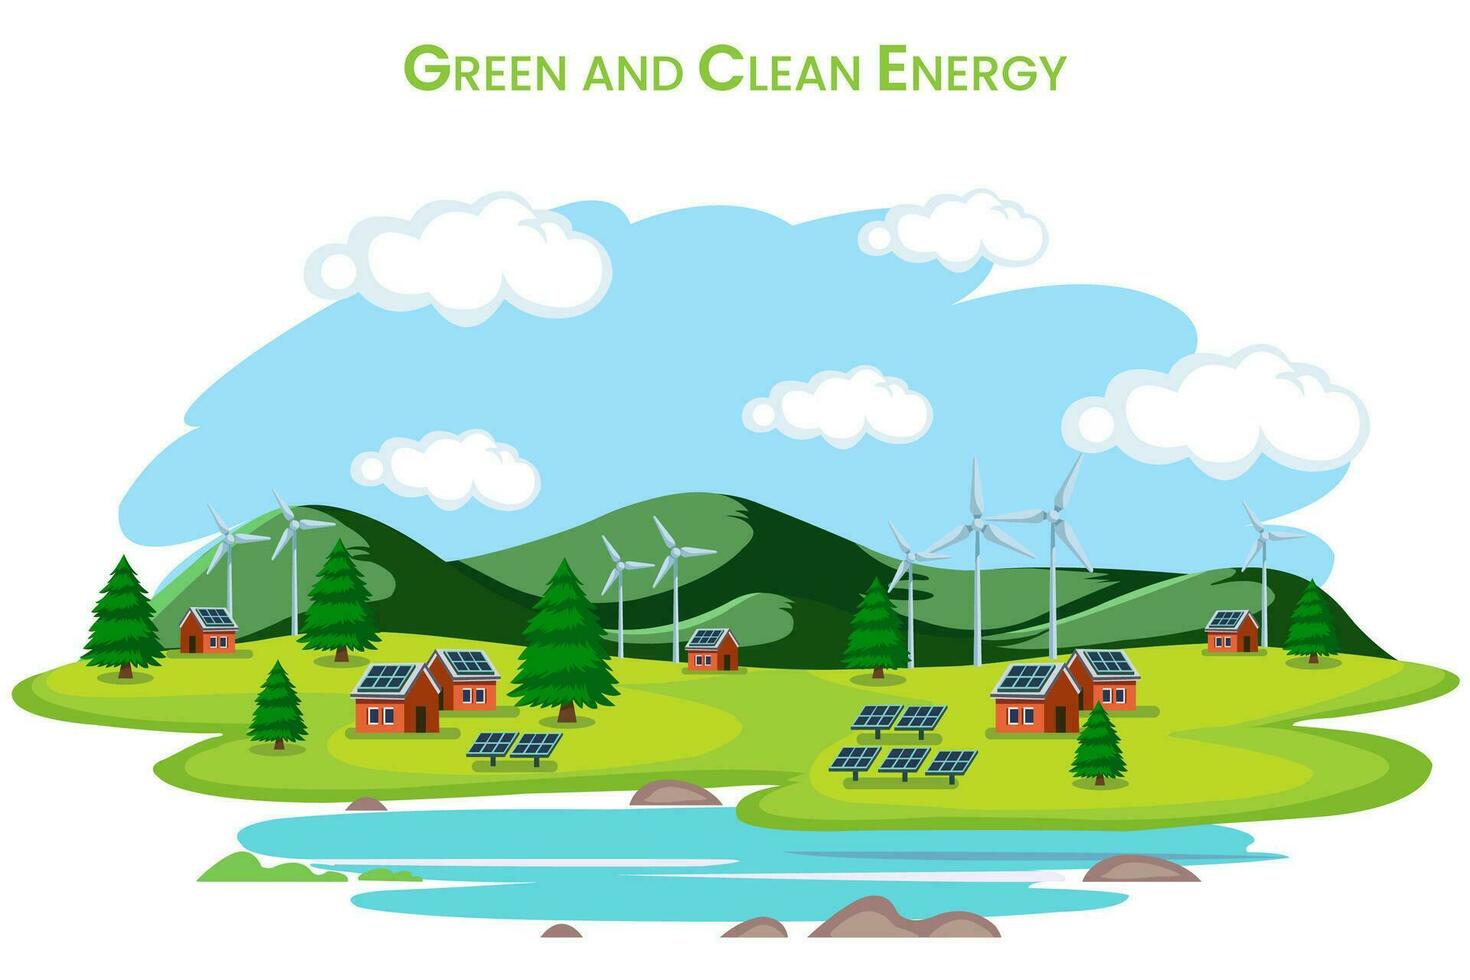 vert énergie sont éco amical sources comme solaire, vent, hydraulique, géothermie promouvoir durabilité vecteur